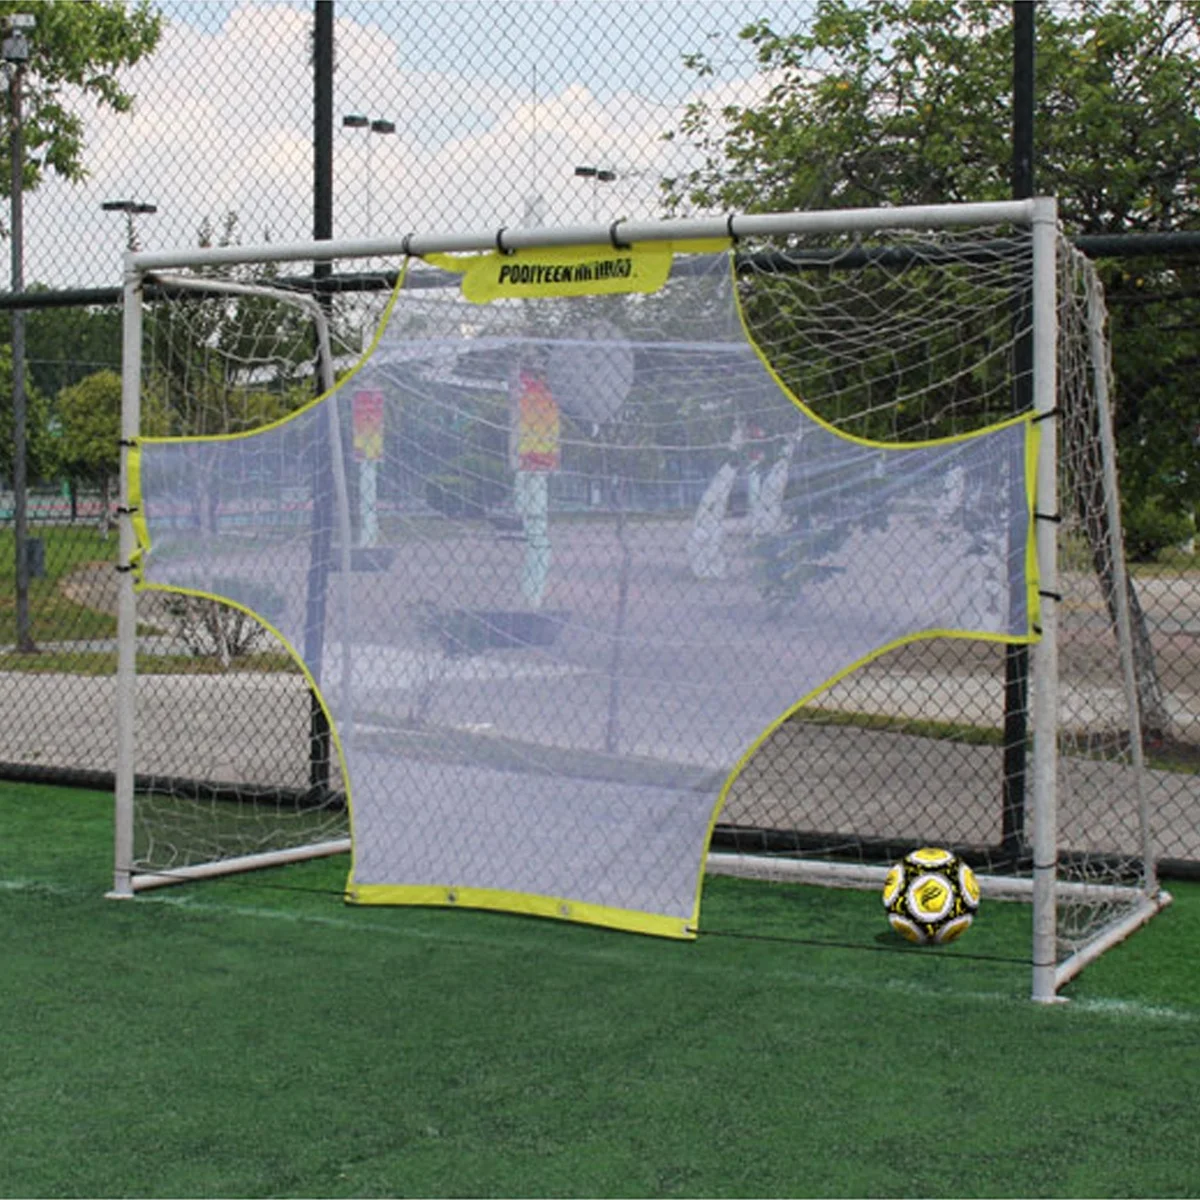 Multiplayer Portable Football Net Football Soccer Training Target Practice Training Shot Goal Net Soccer Ball for Children Adult